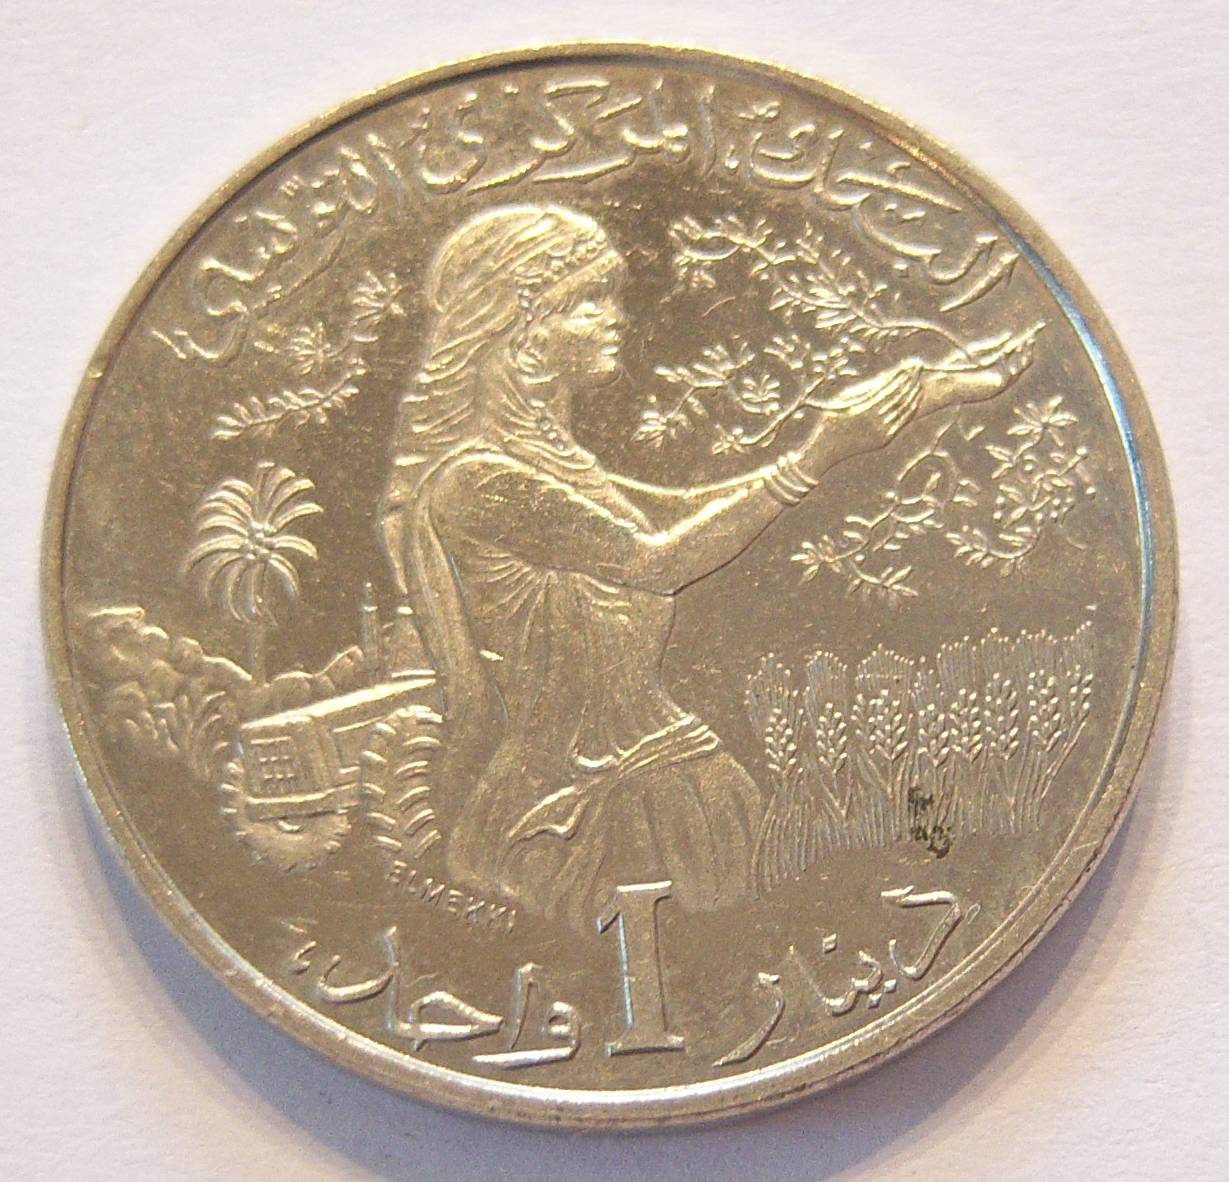  Tunesien 1 Dinar 1983   